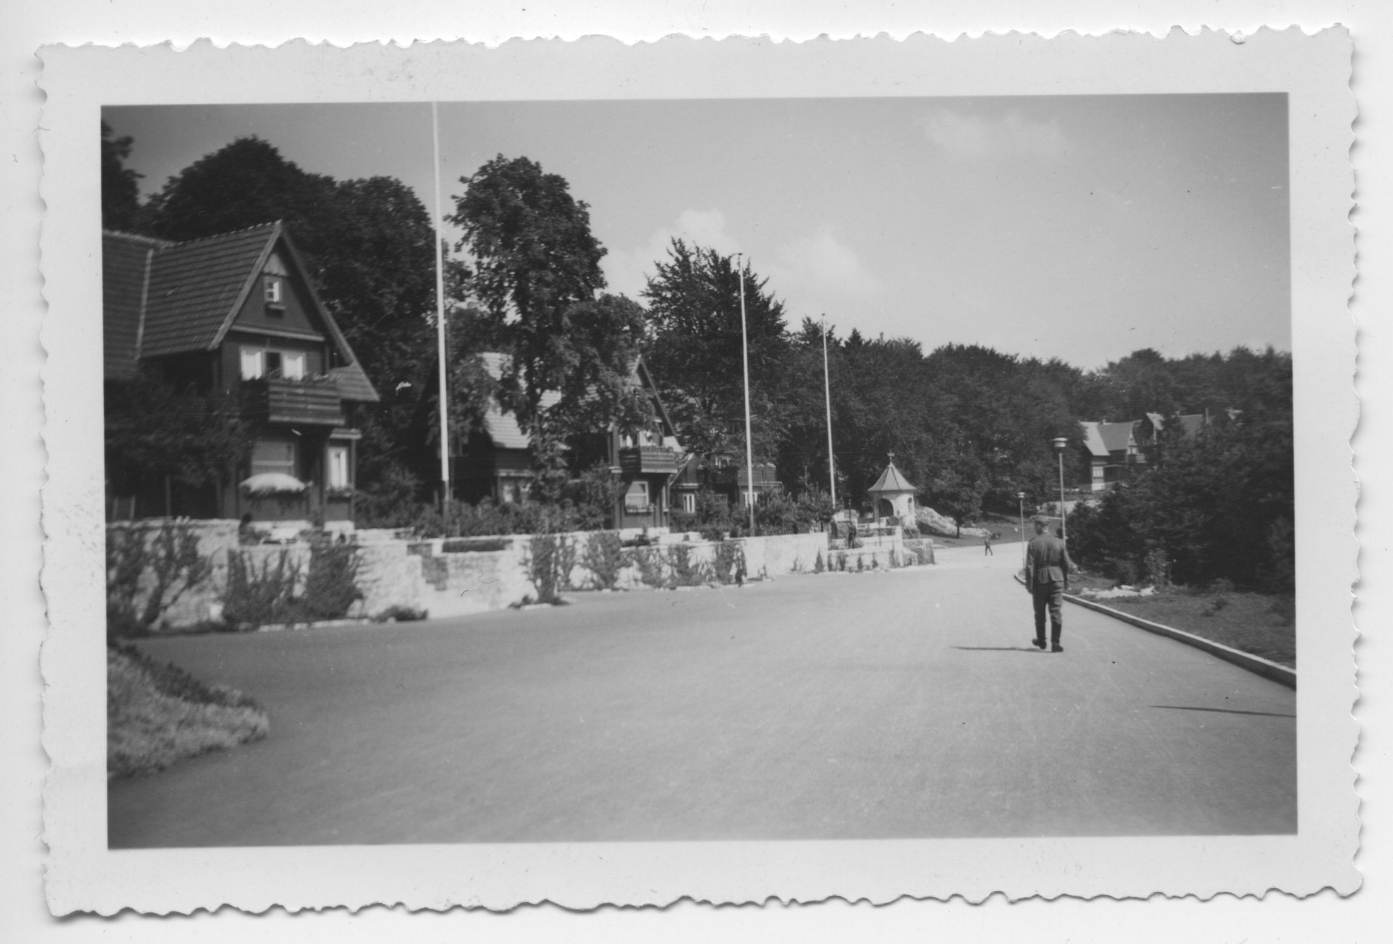 Blick auf die Villenstraße in der SS-Führersiedlung, 1940. Die Straße ist breit, die zweistöckigen Villen mit Balkonen zur Straße stehen durch hohe Bäume voneinander getrennt.